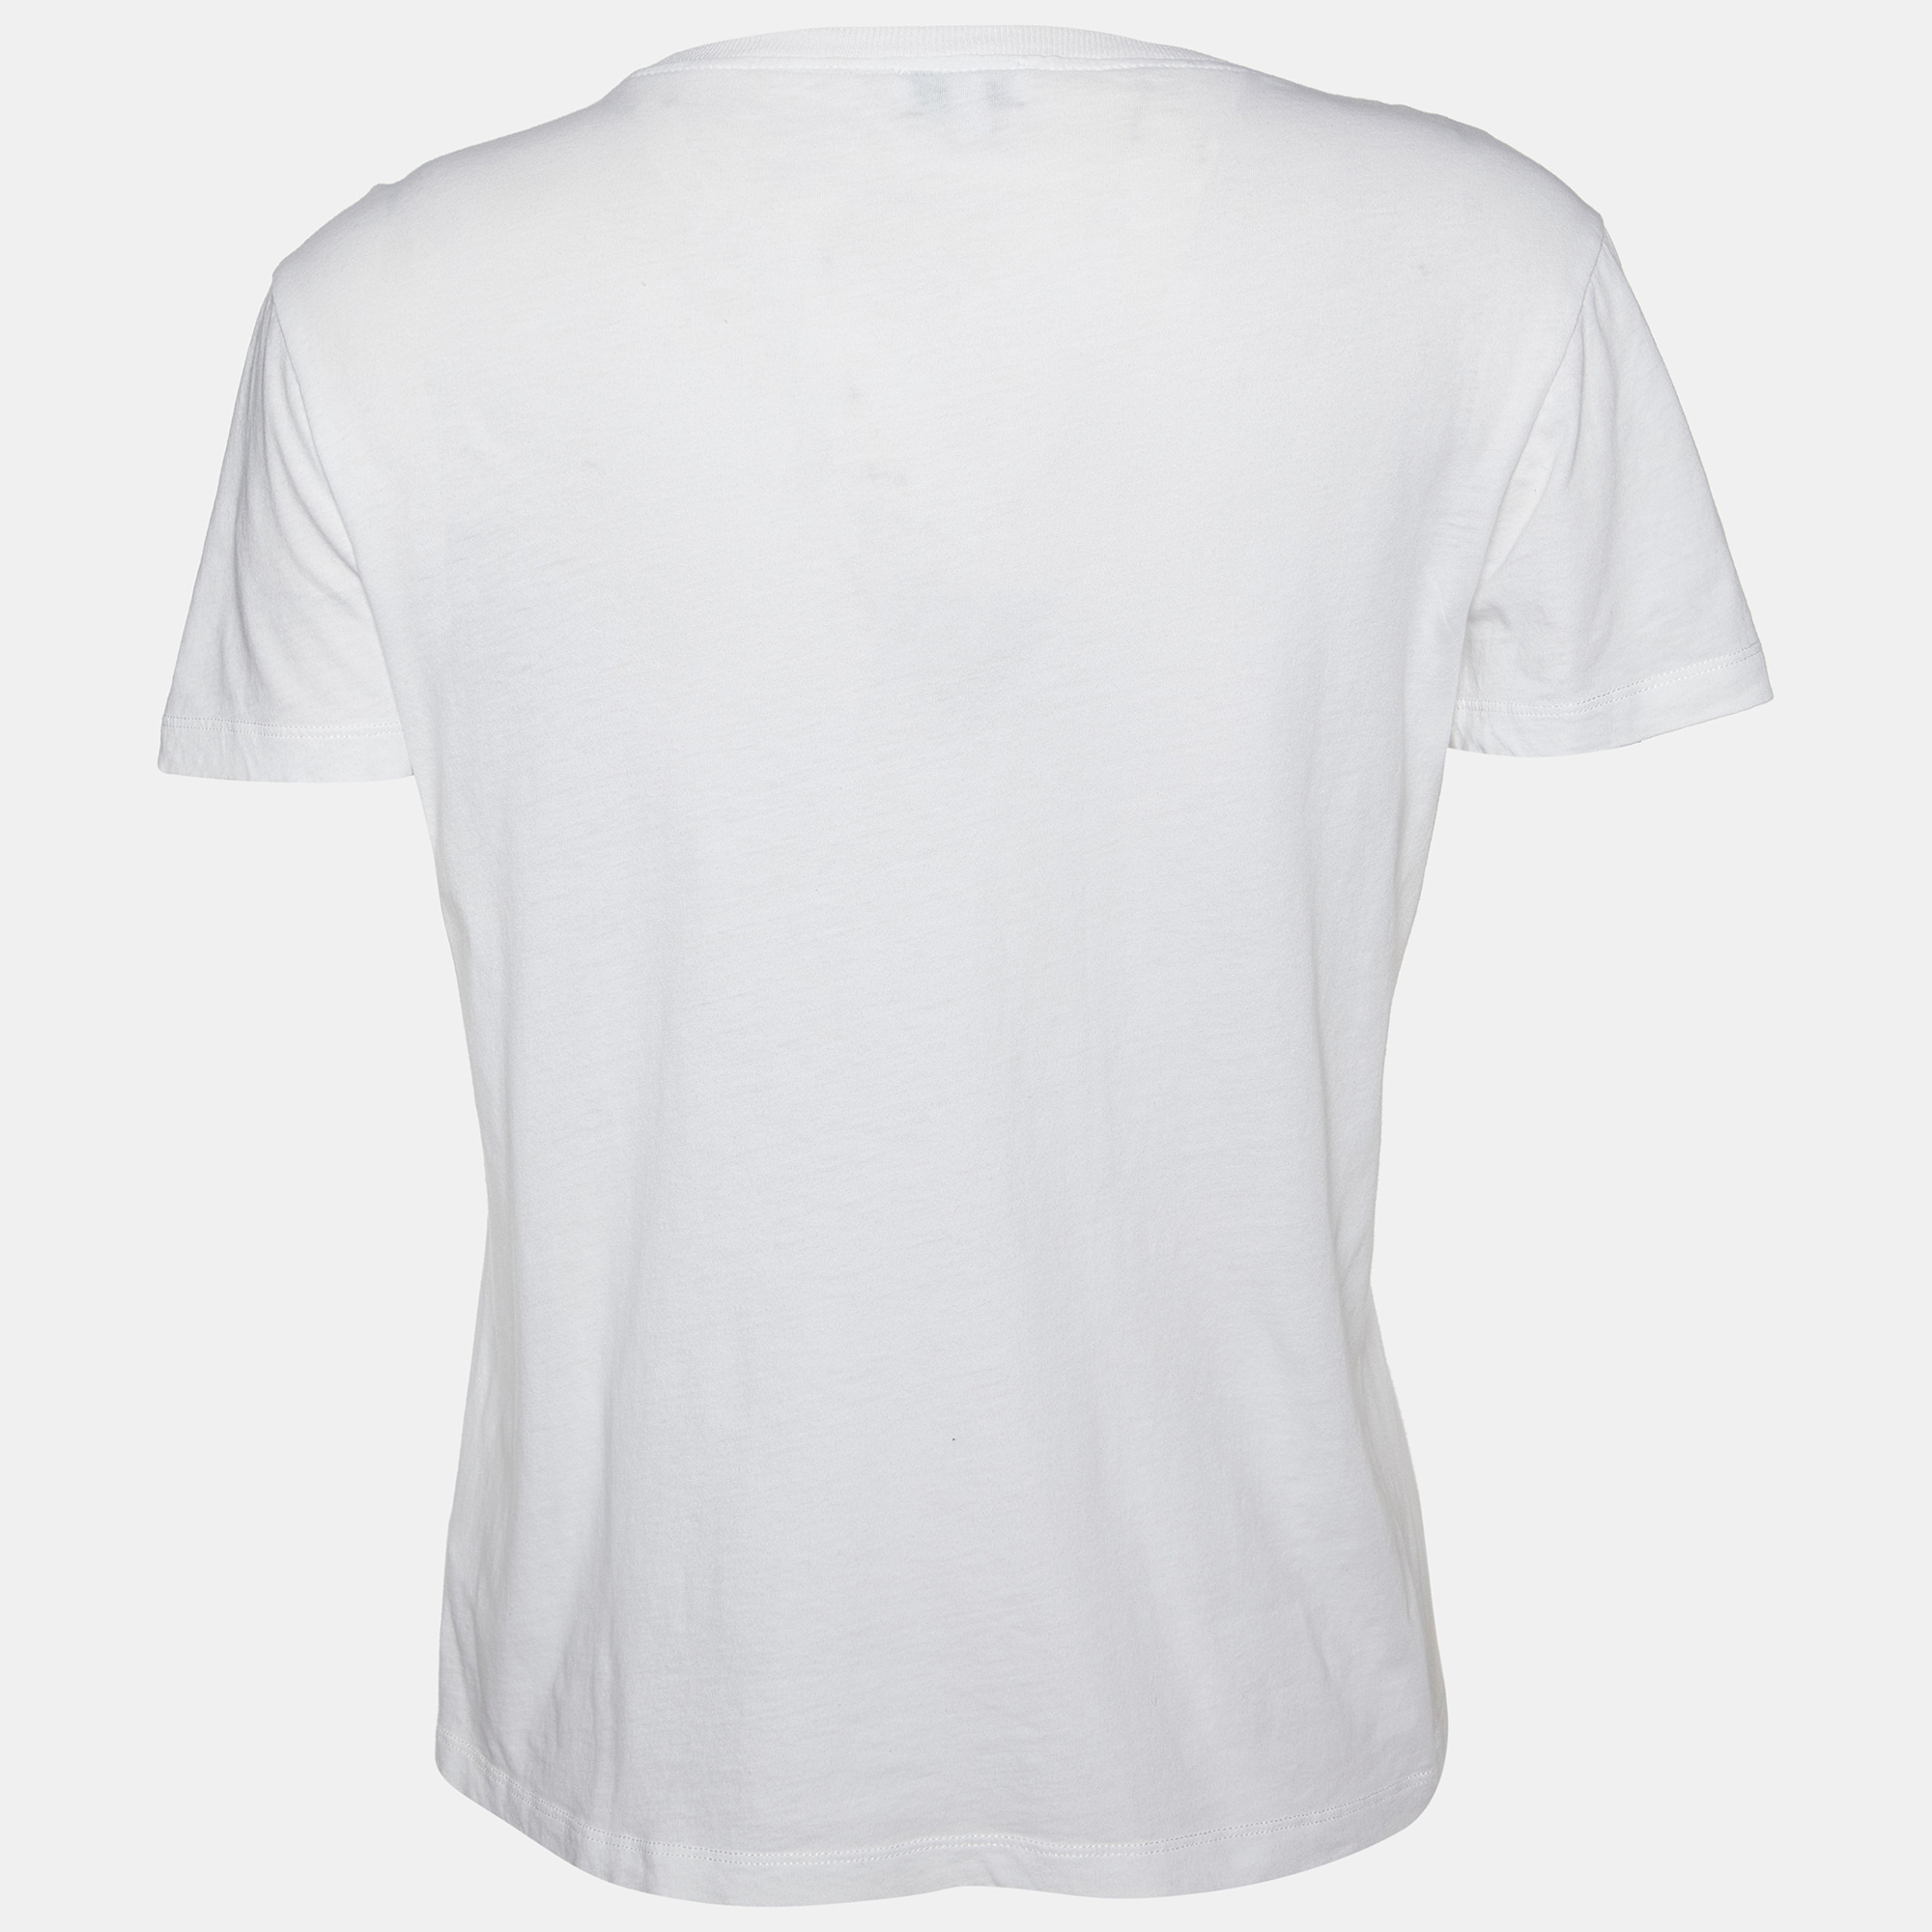 

Kenzo White Tiger Motif Print Cotton Jersey Crew Neck T Shirt